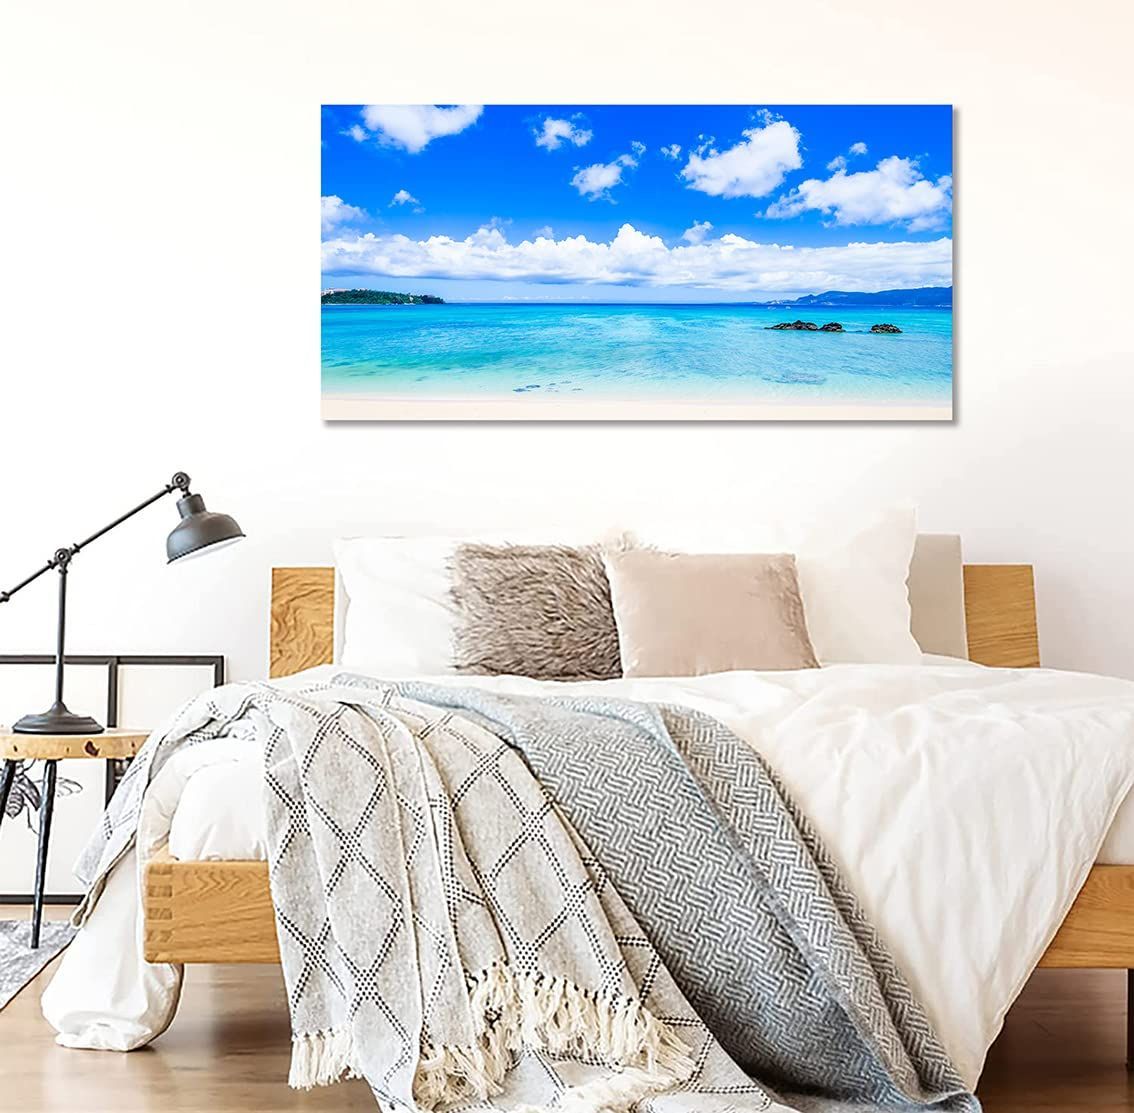 アートパネル 絵画 青い海 ポスター 風景画 壁掛け 室内装飾 木枠付き